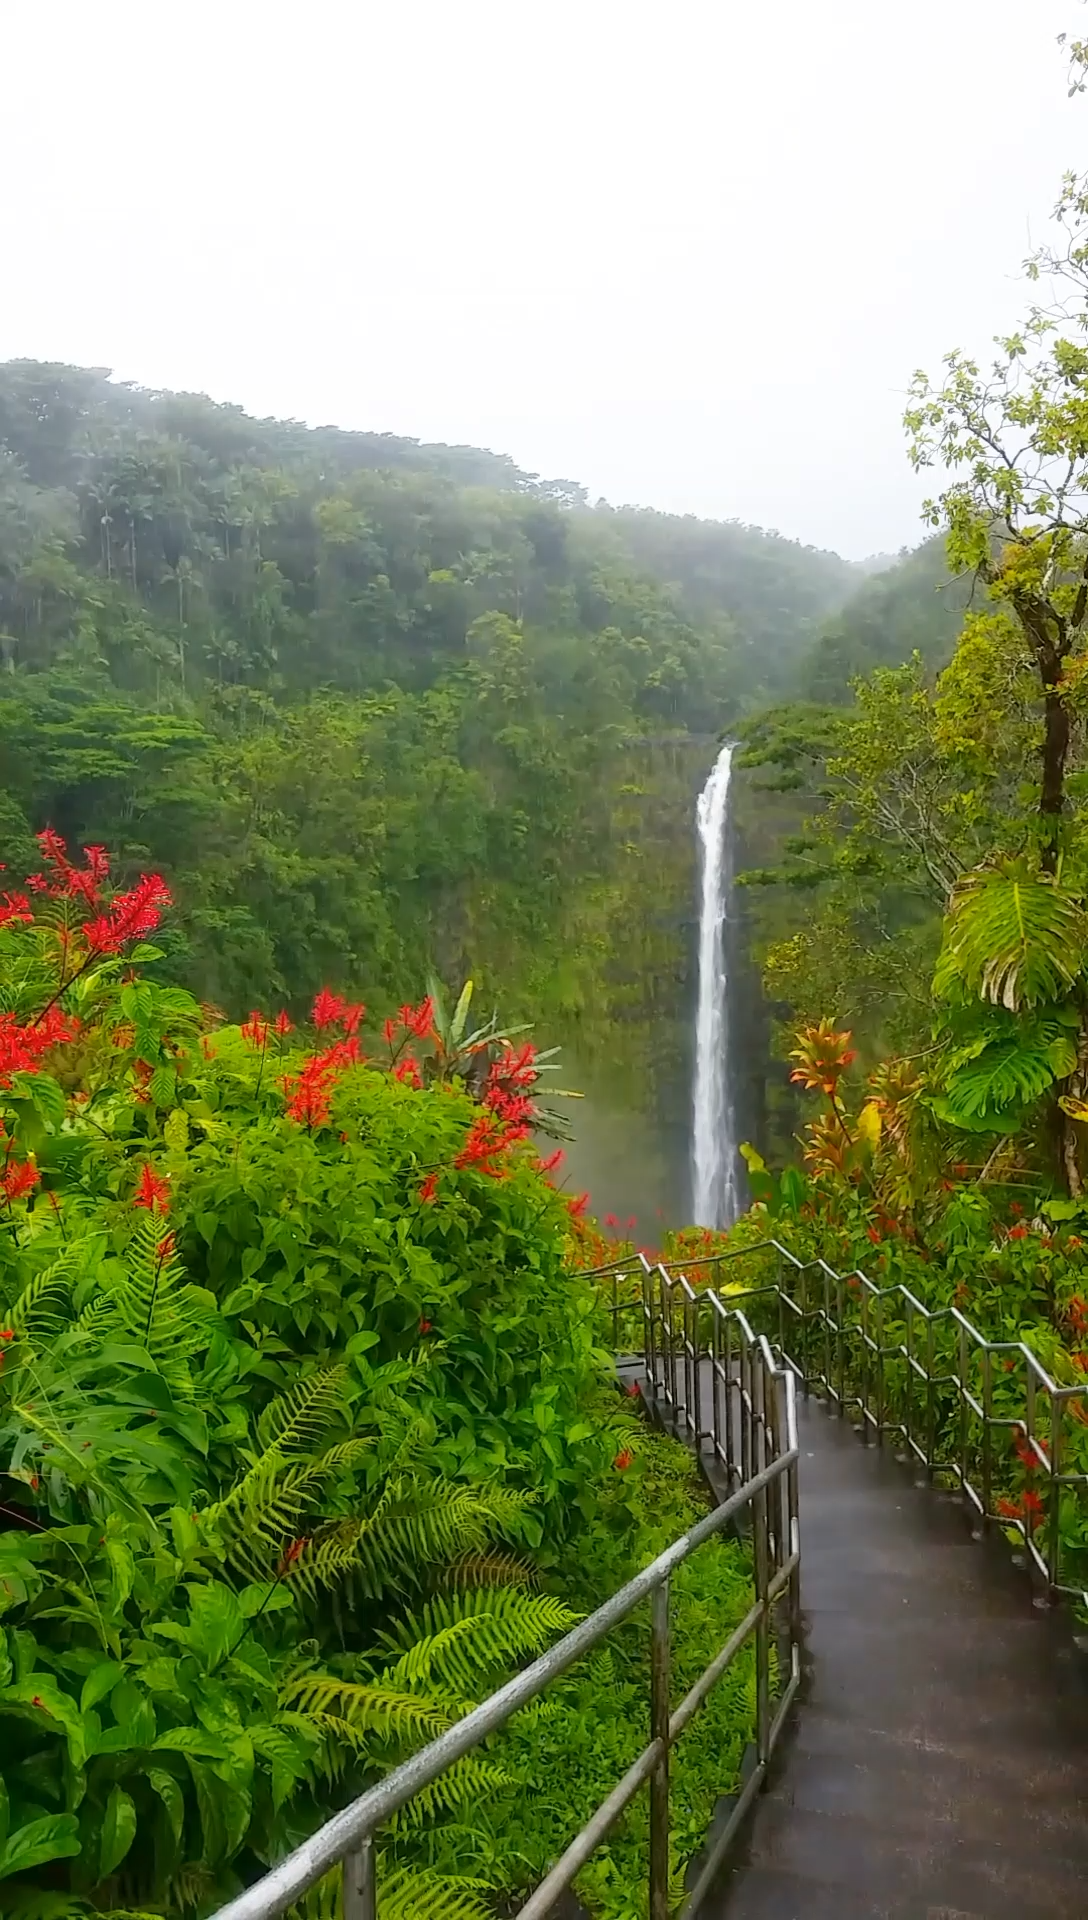 Akaka Falls loop trail in Hawaii - Akaka Falls loop trail in Hawaii -   16 beauty Photography wanderlust ideas